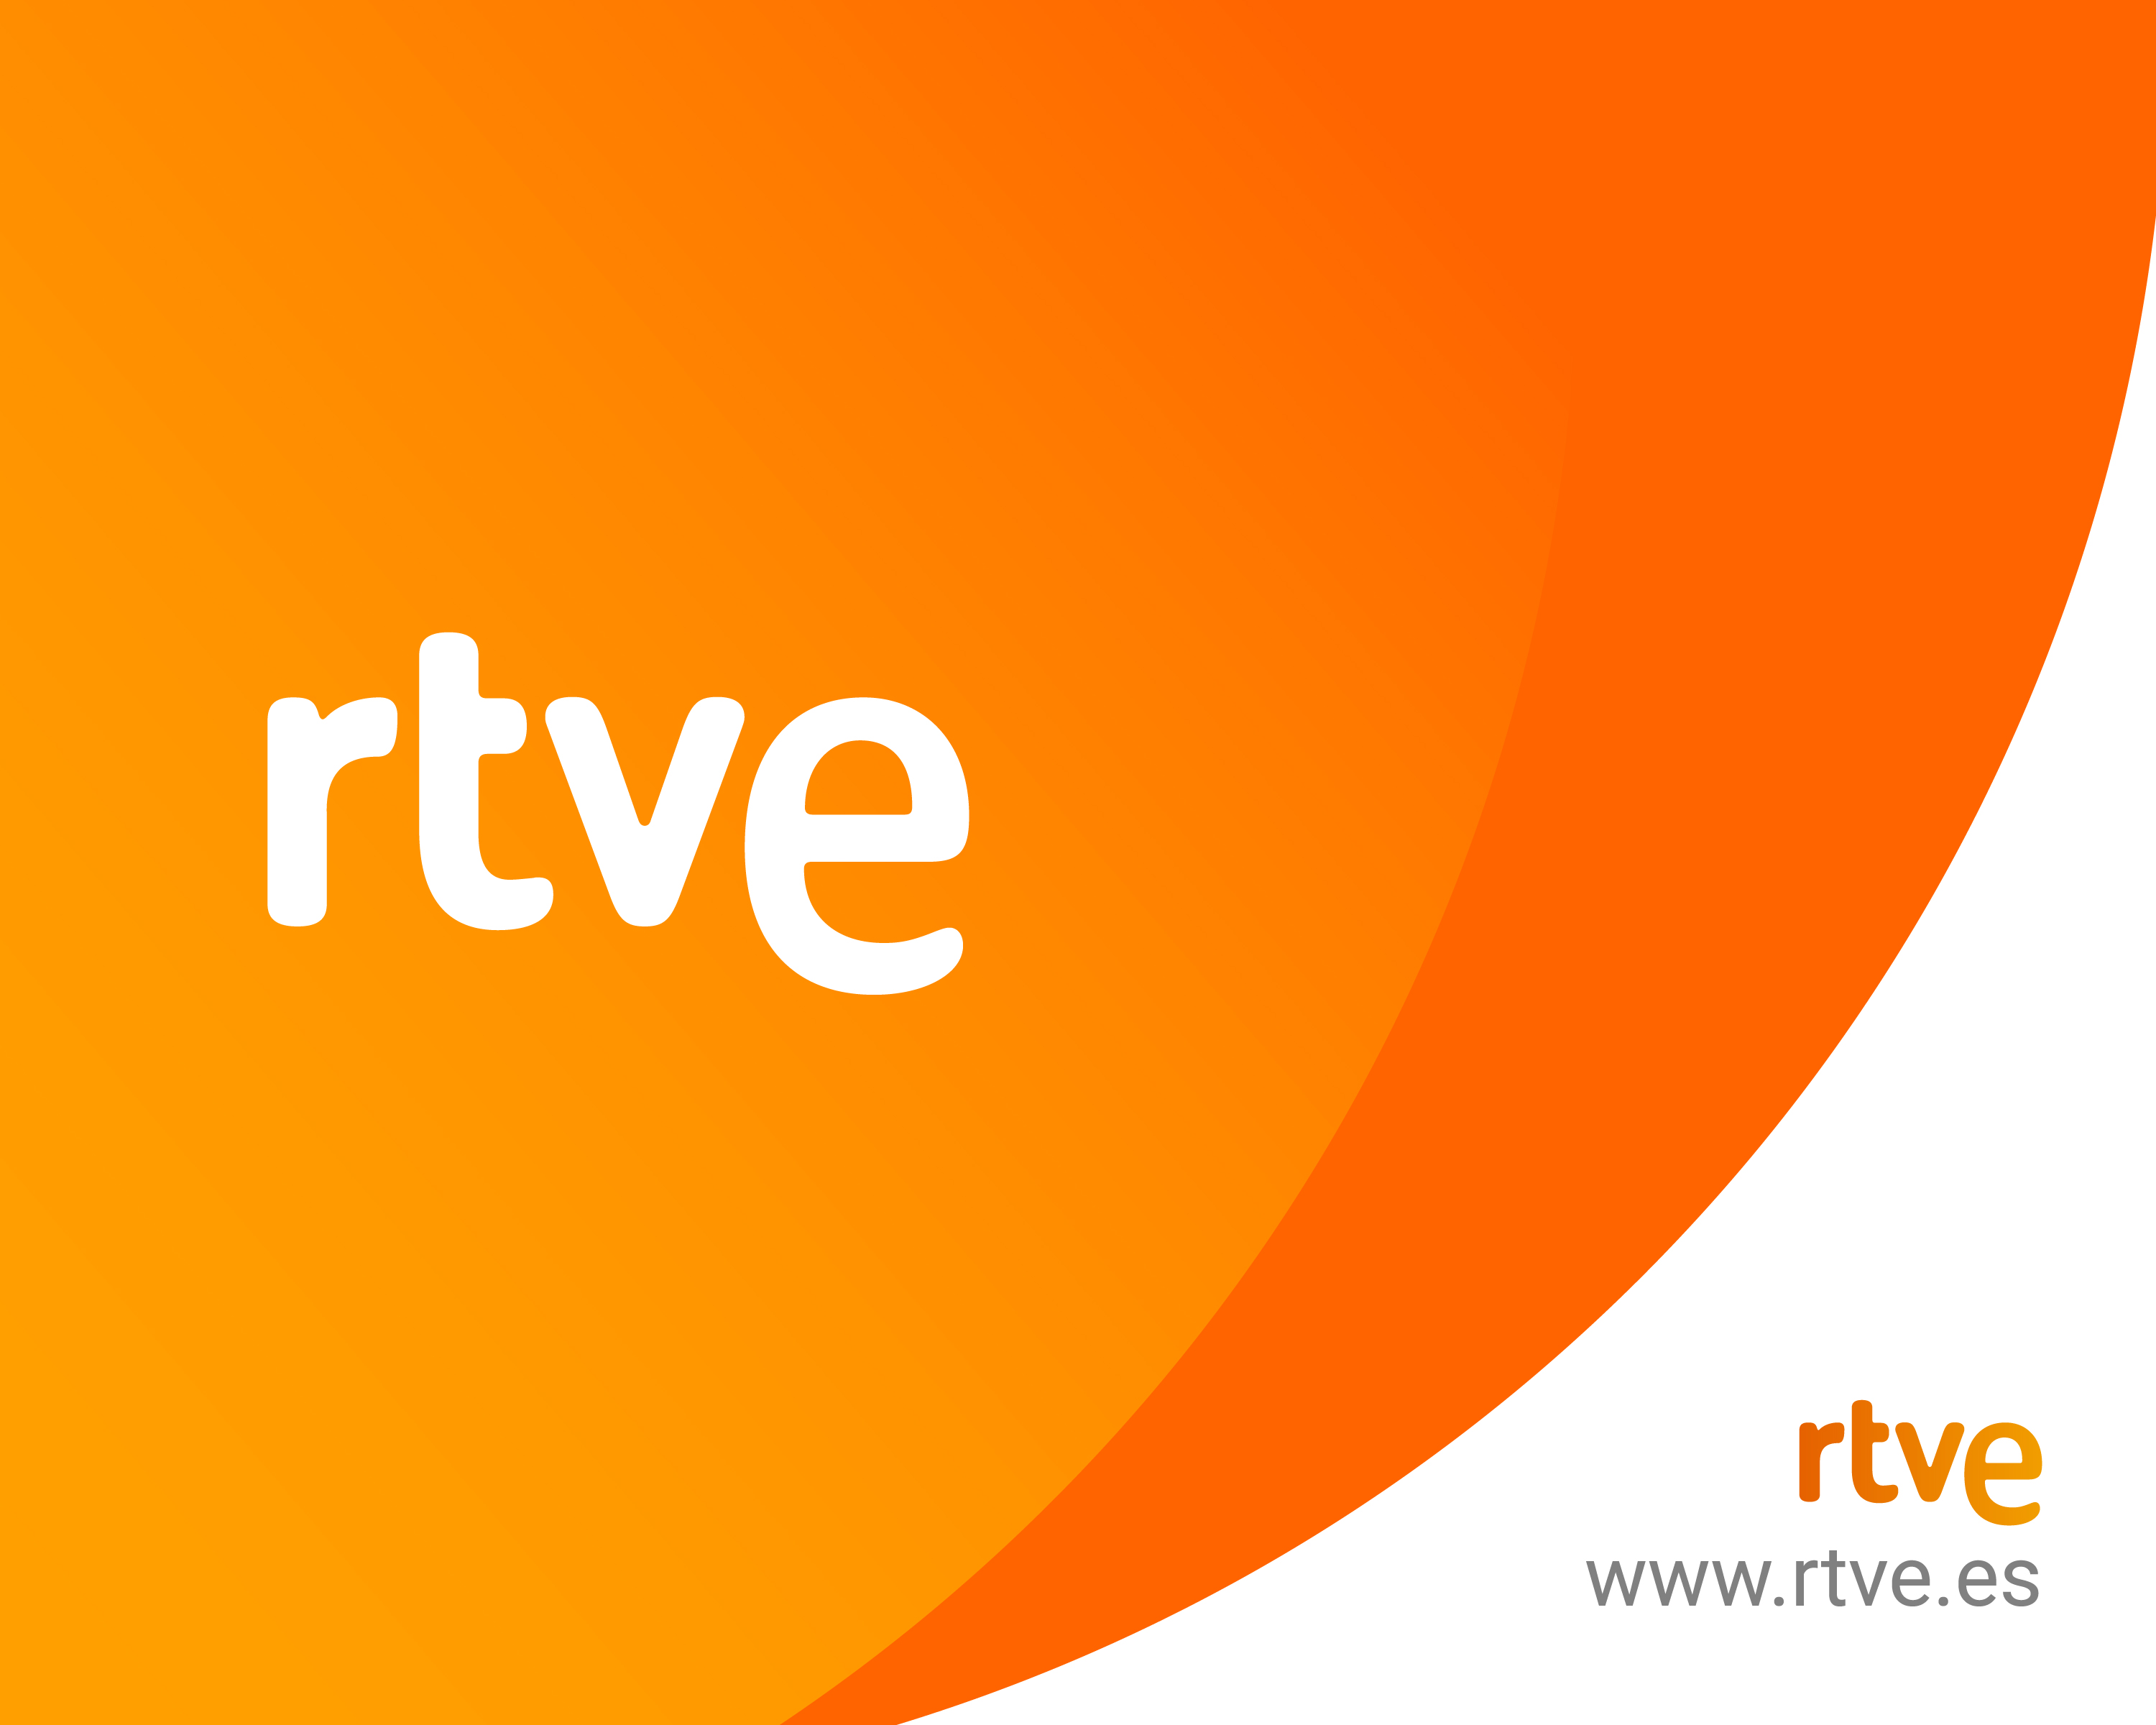 RTVE Audio